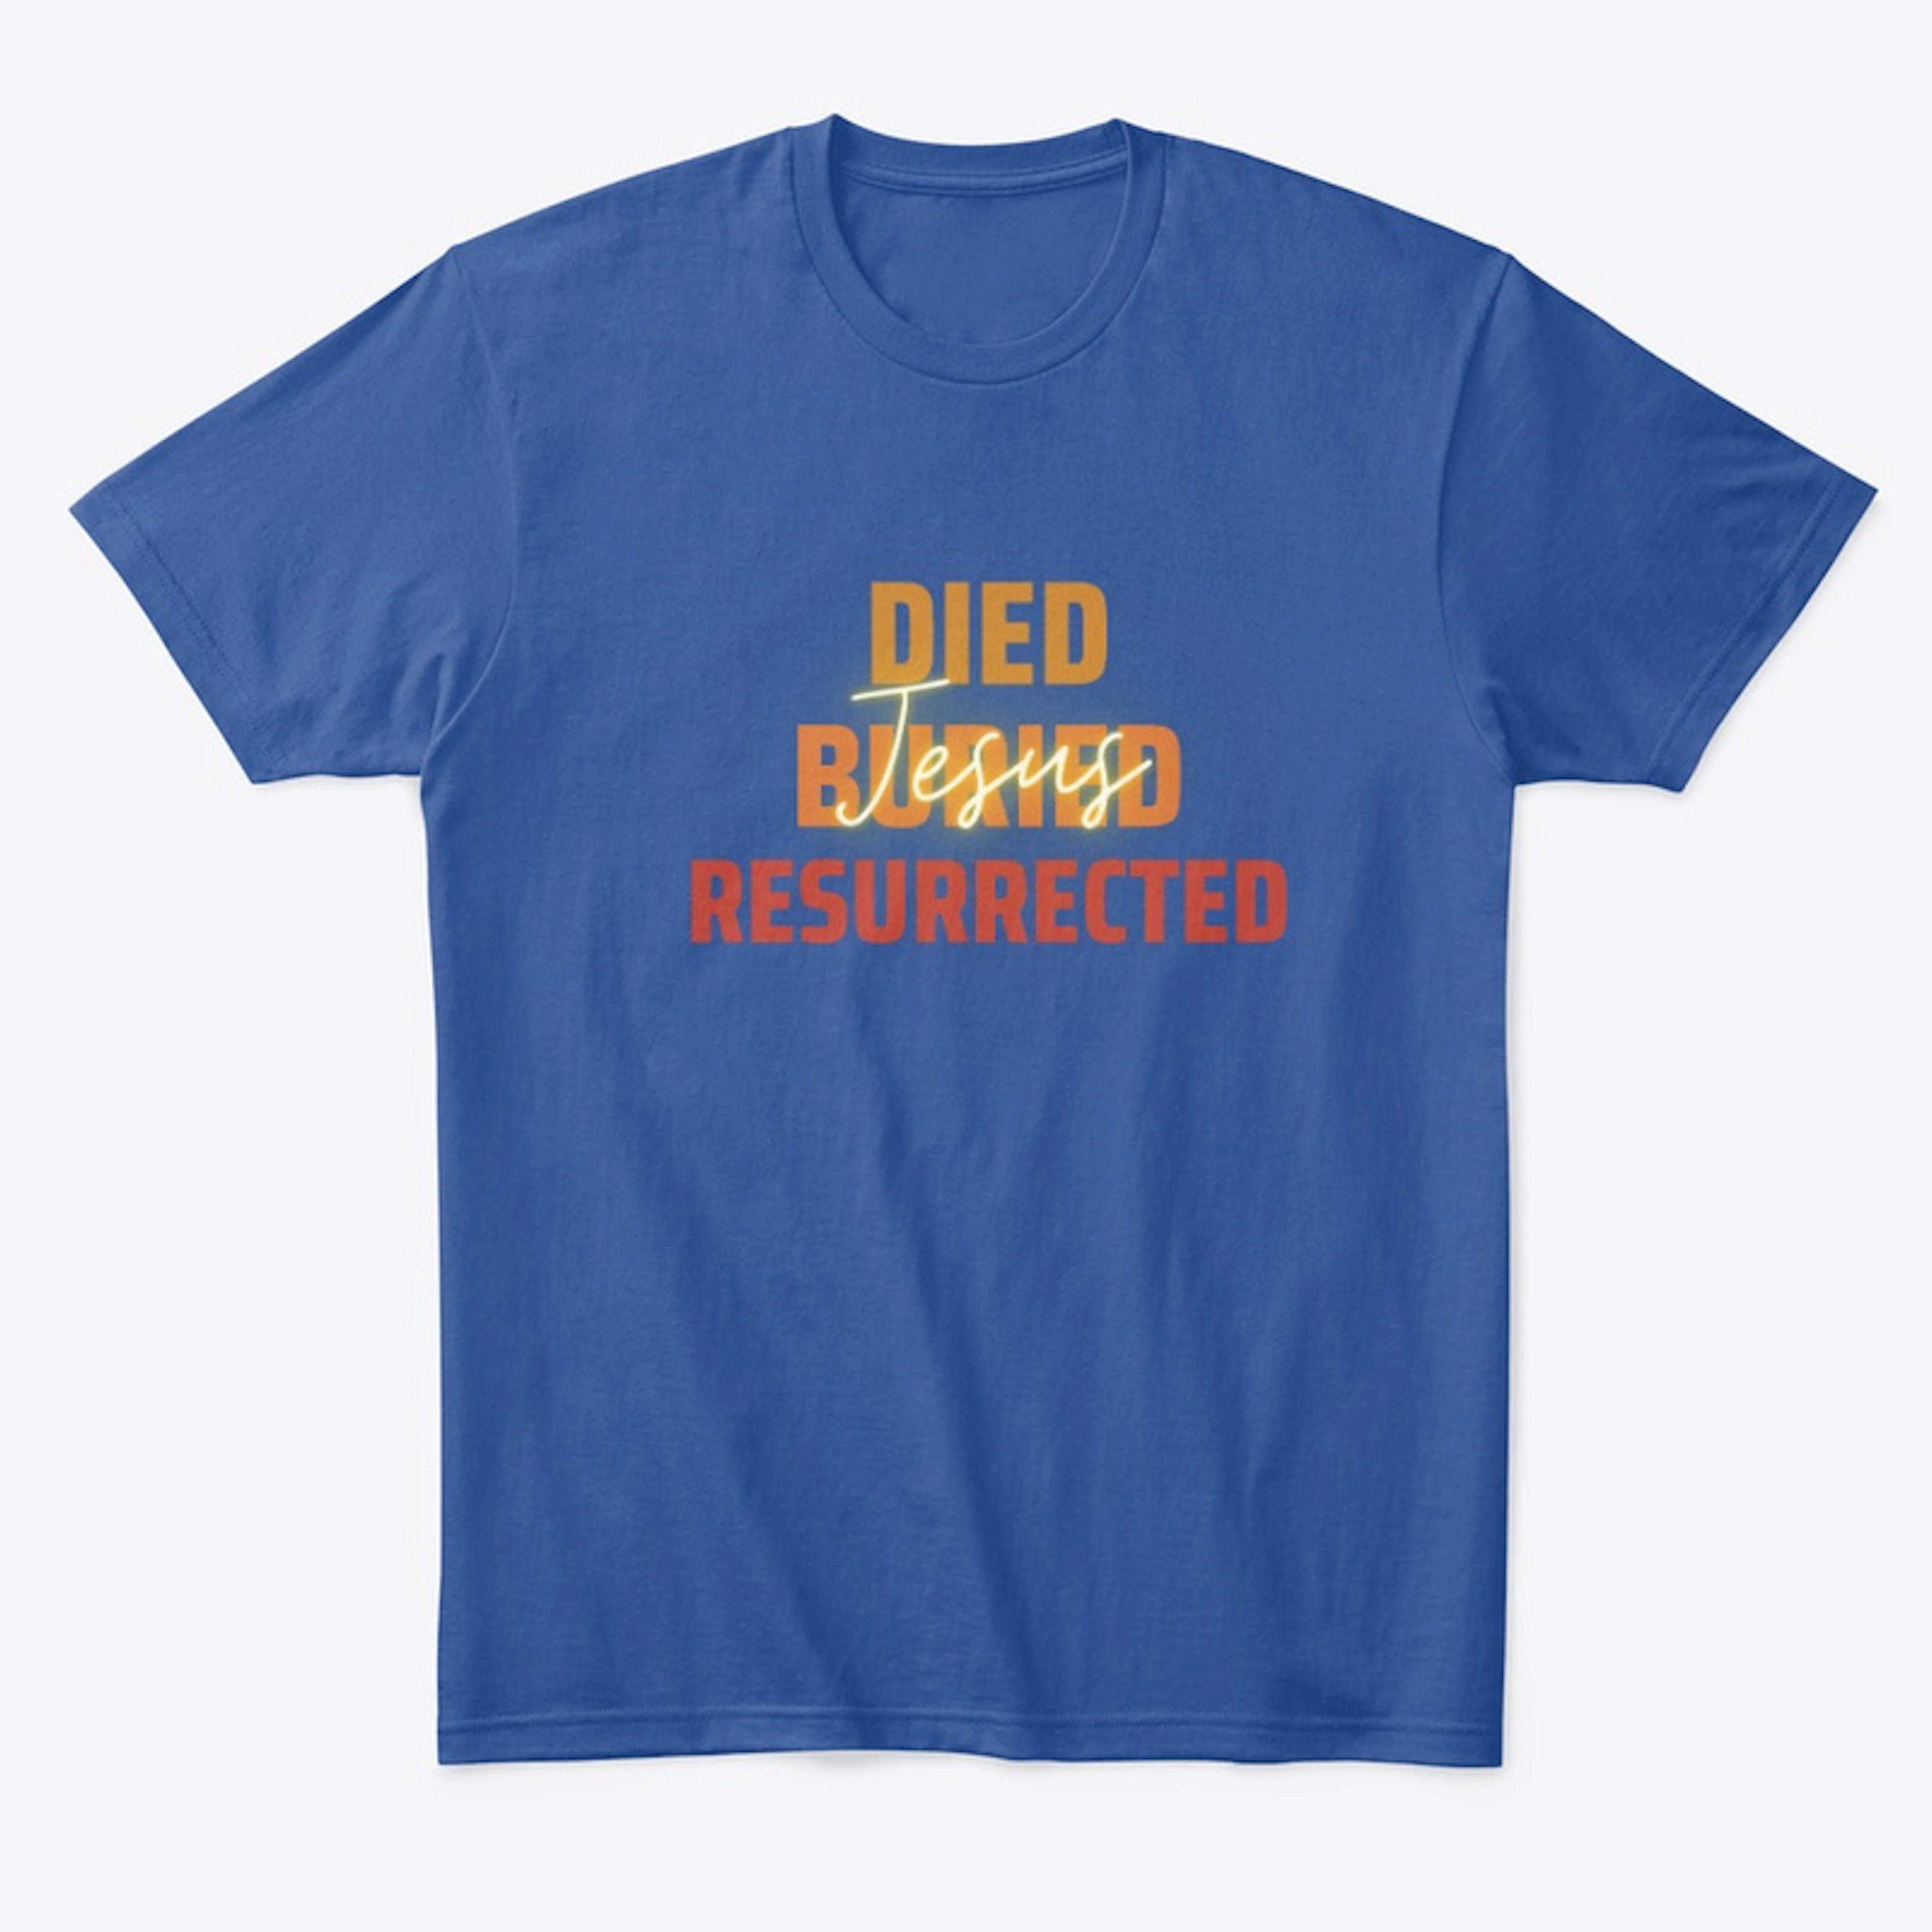 Jesus Died, Buried, Resurrected 